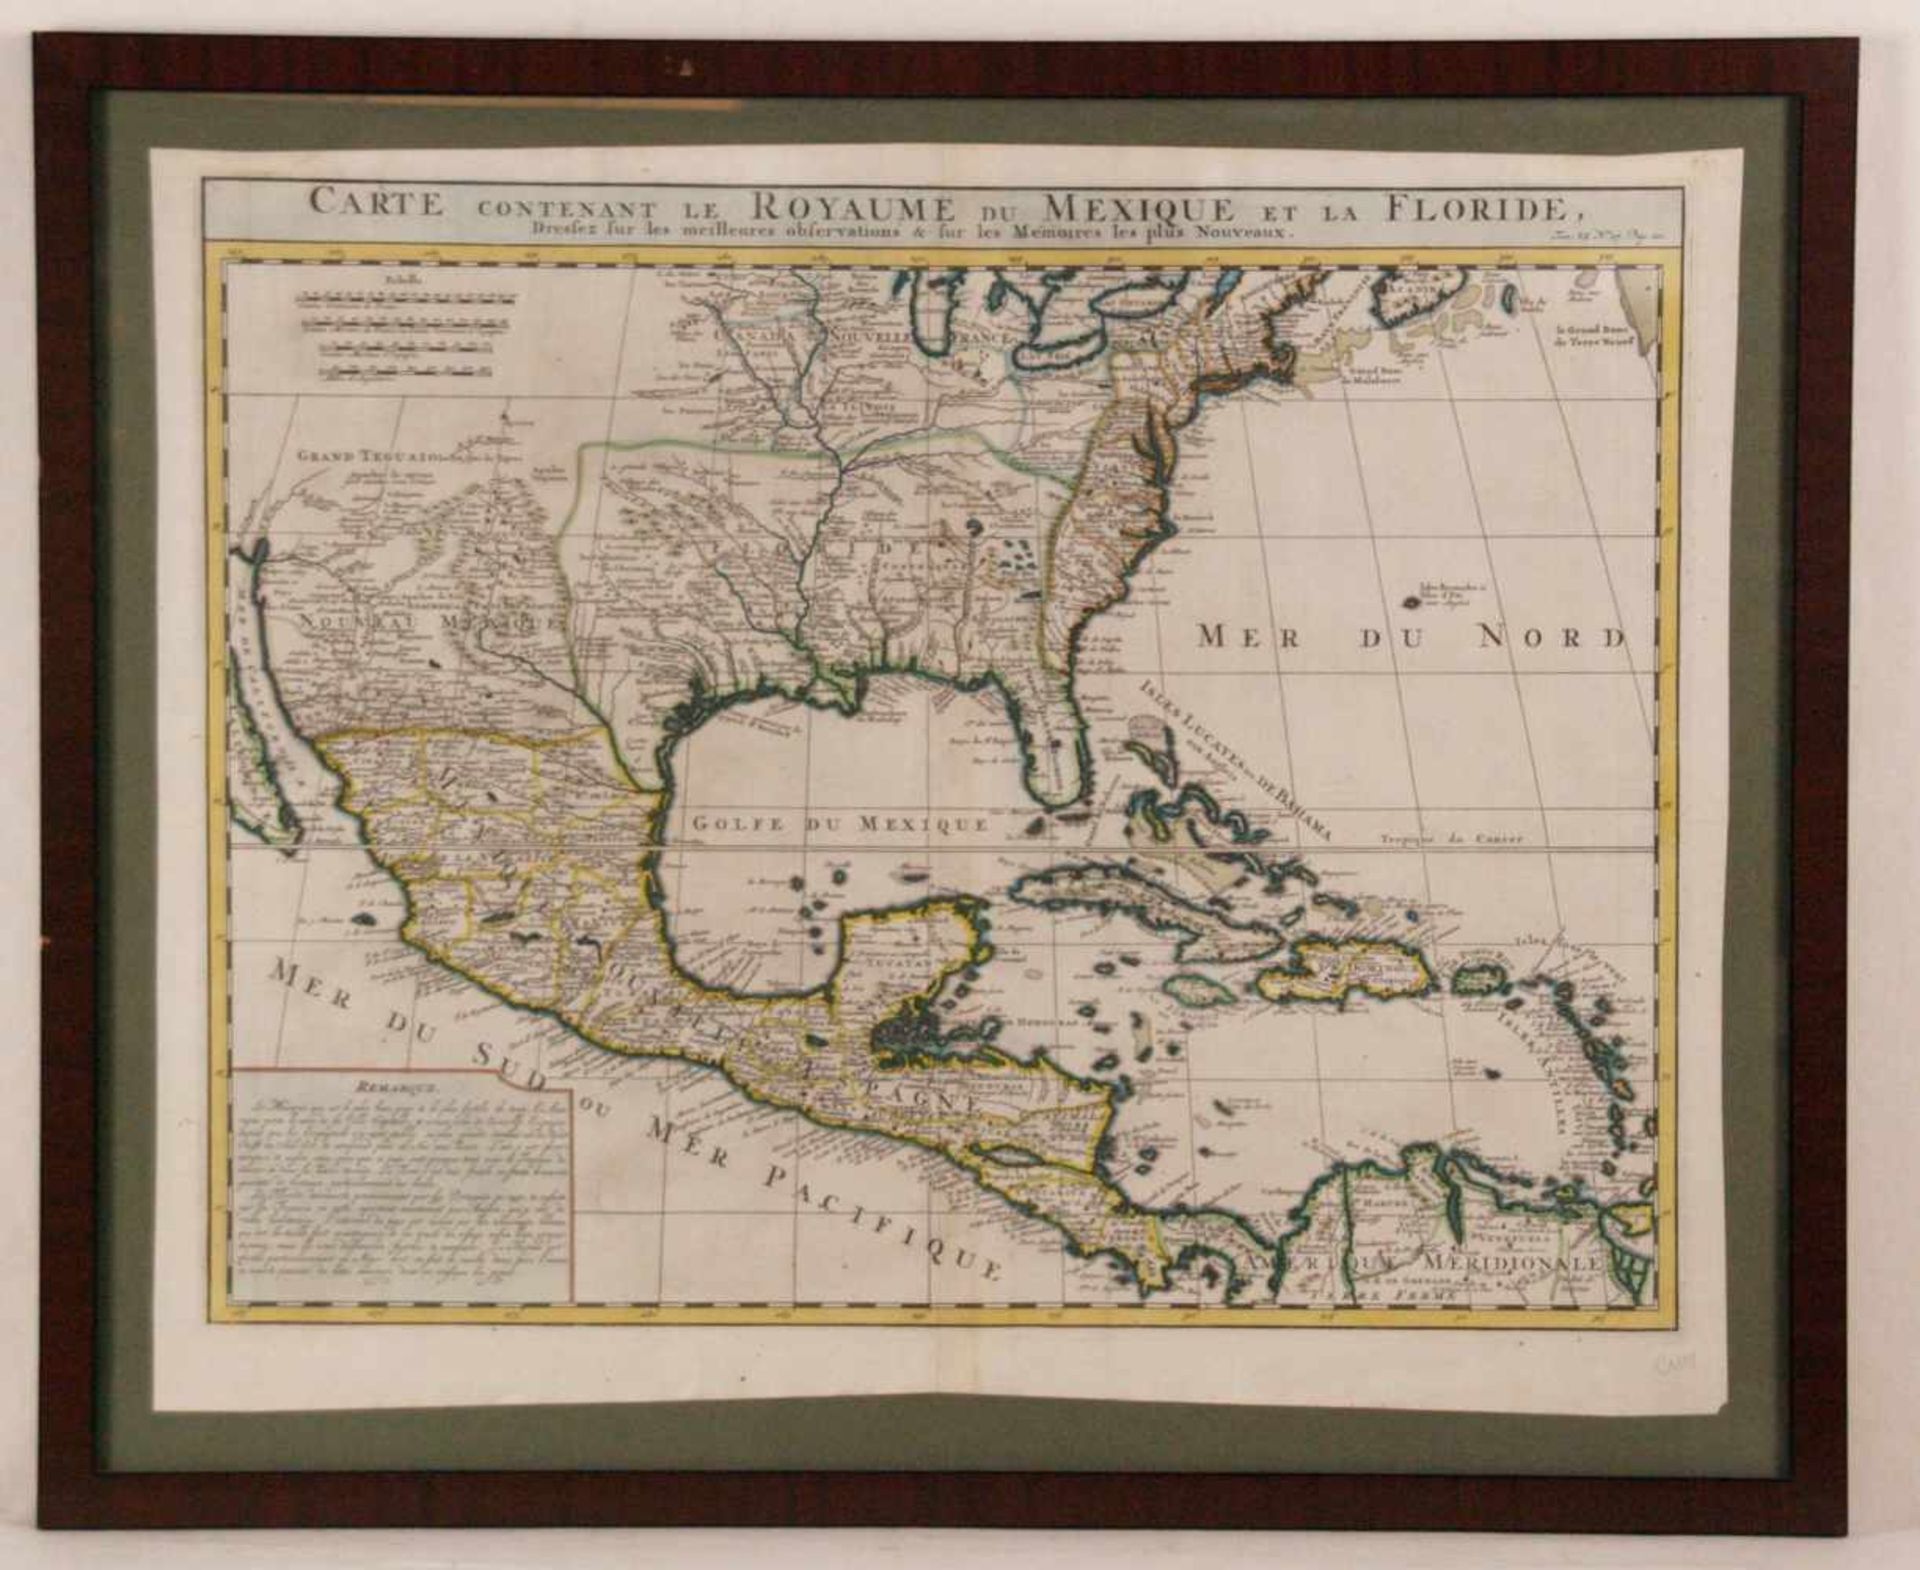 Chatelain, Henri Abraham (Paris 1684 - 1743) - "Carte contenant le Royaume du Mexique et la